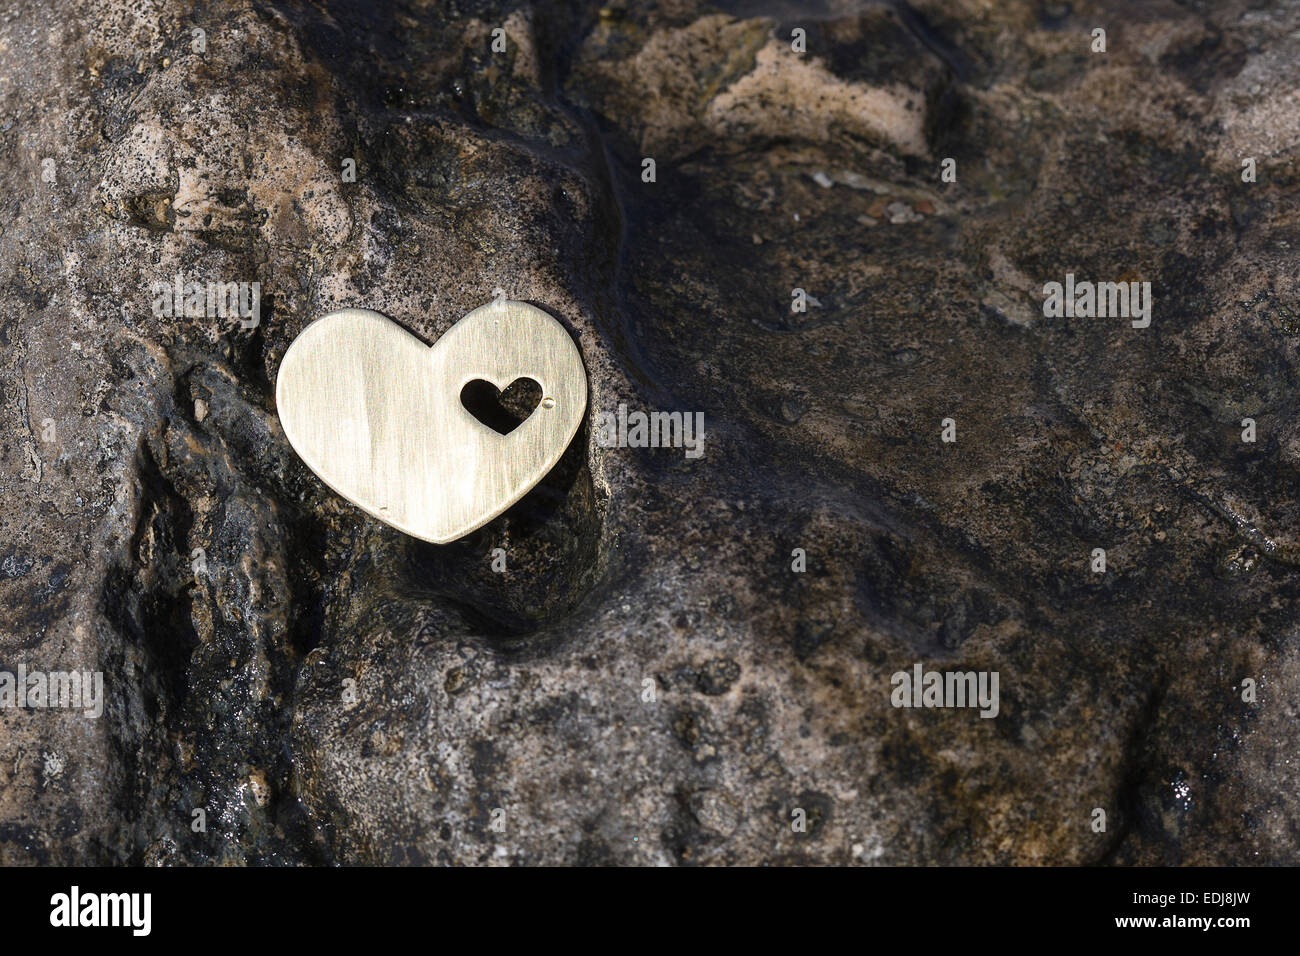 Un brillante corazón de metal precioso se coloca sobre una roca húmeda oscura en una playa. Foto de stock